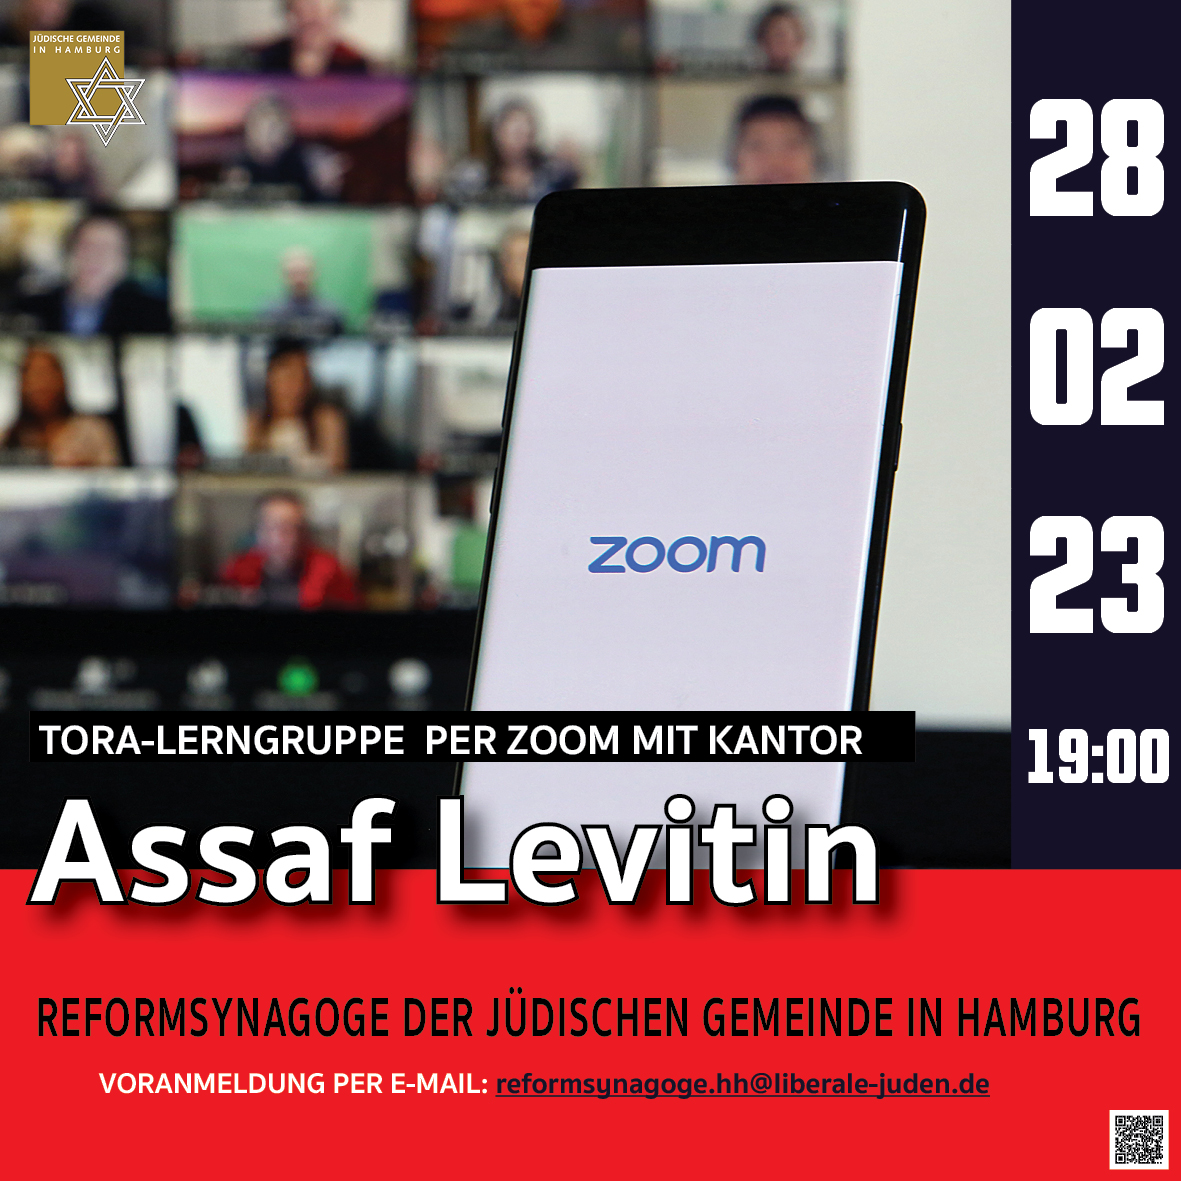 Reformsynagoge: Tora-Lerngruppe per Zoom mit Kantor Assaf Levitin